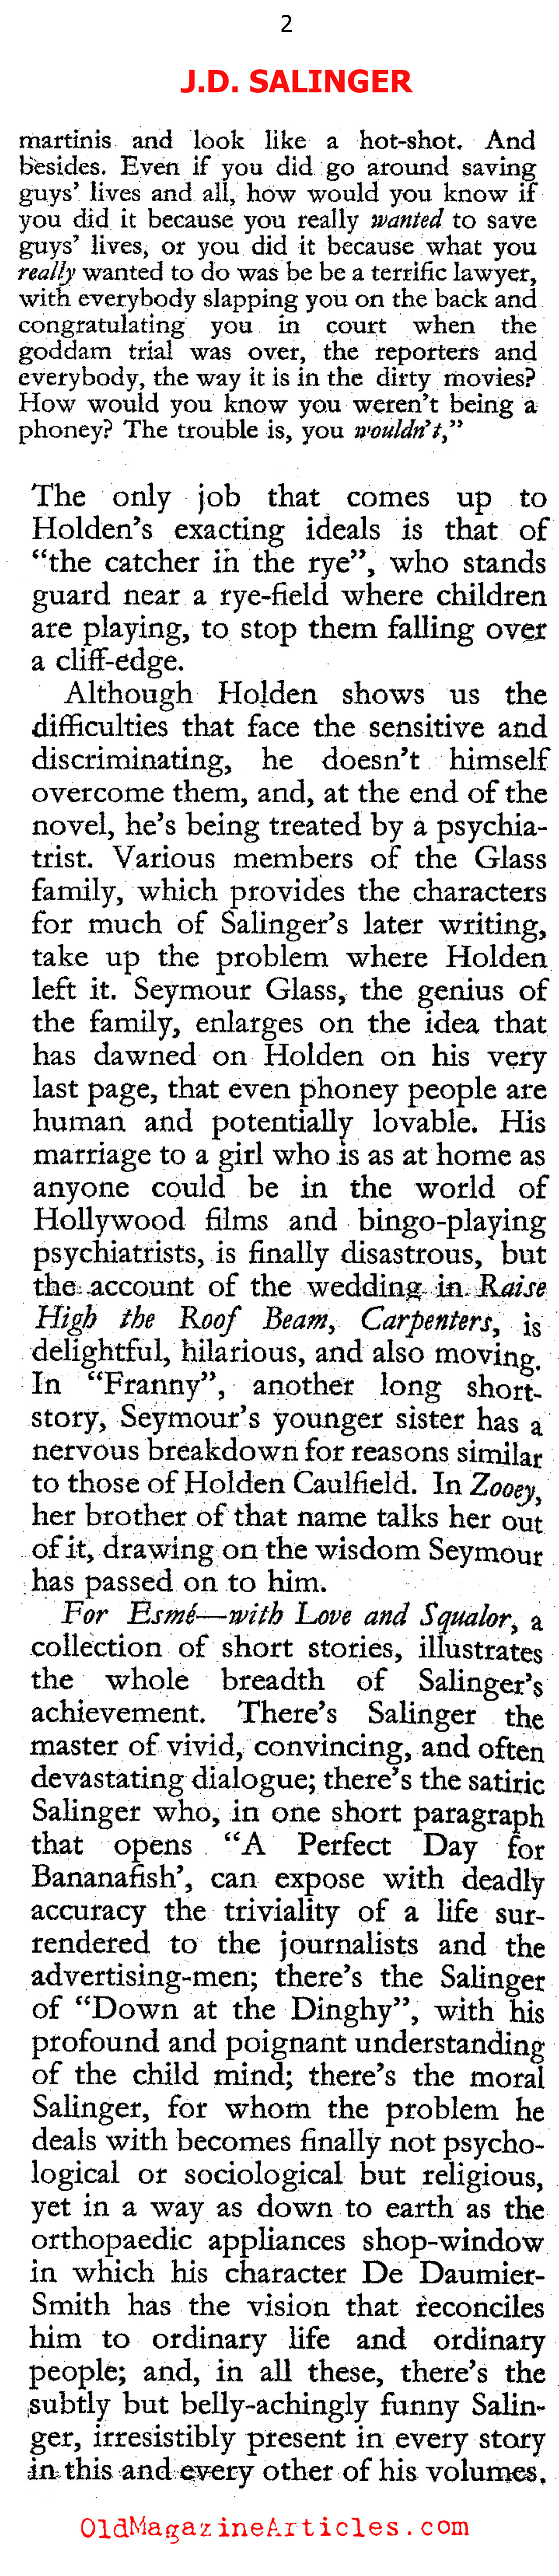 The Work of J.D. Salinger (The Hibbert Journal, 1964)